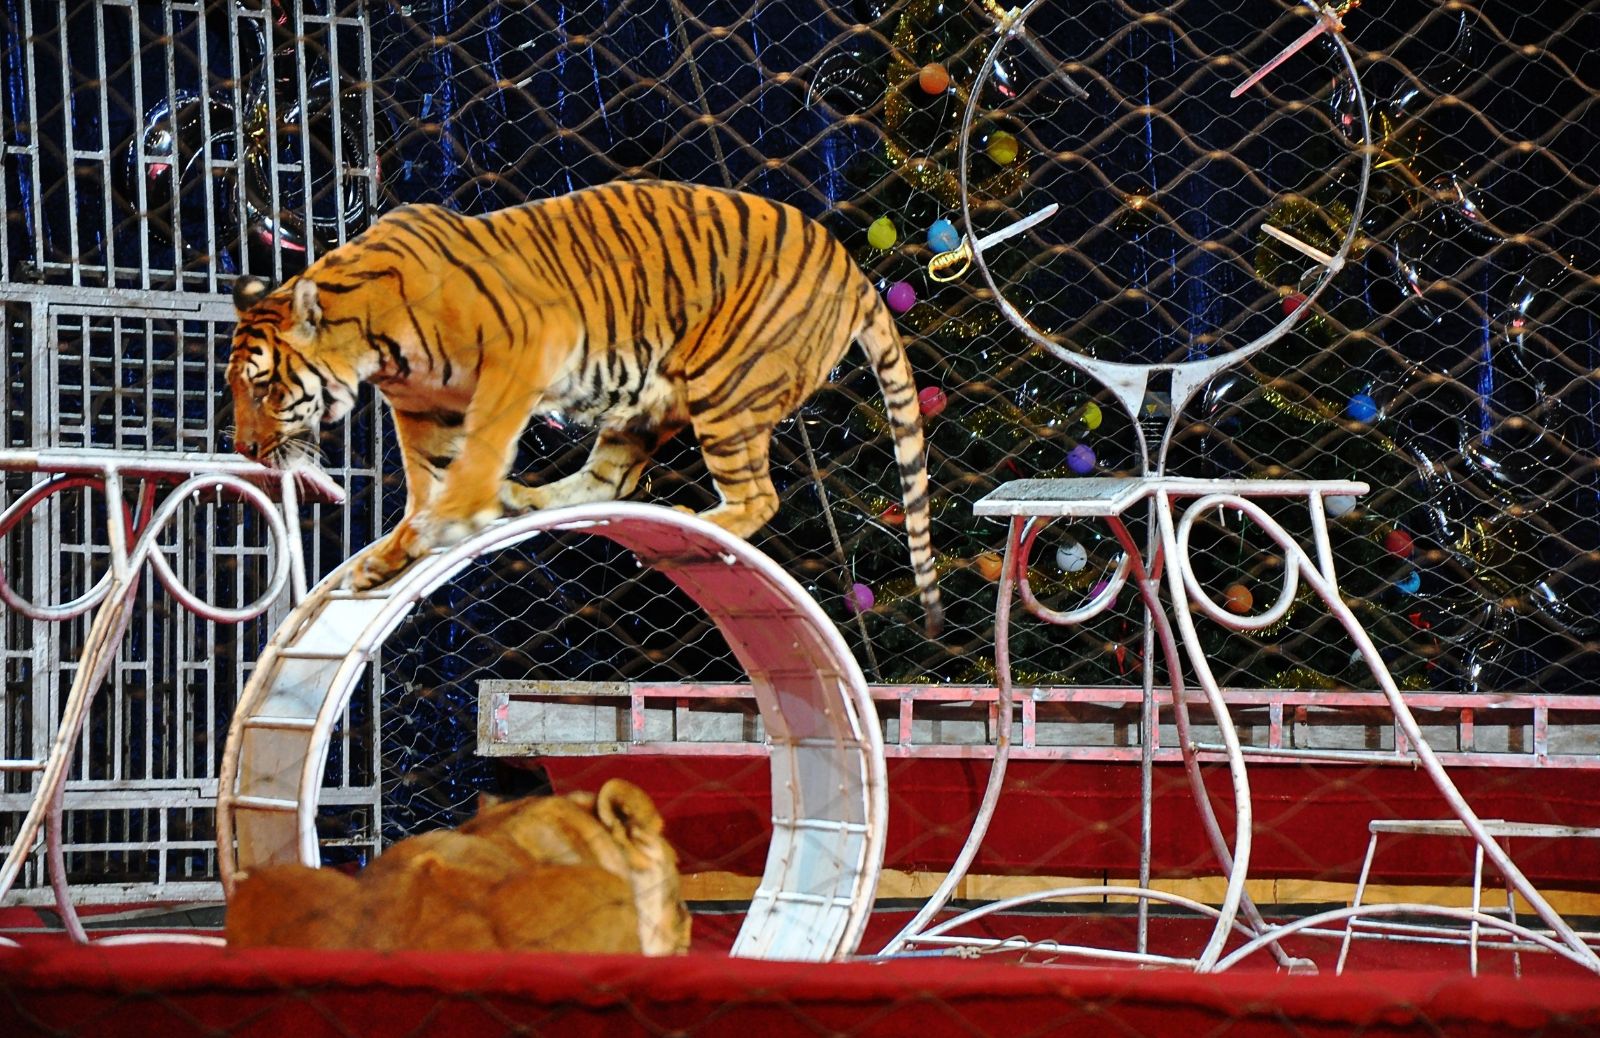 Animali in gabbia: quali paesi vietano i circhi con animali?